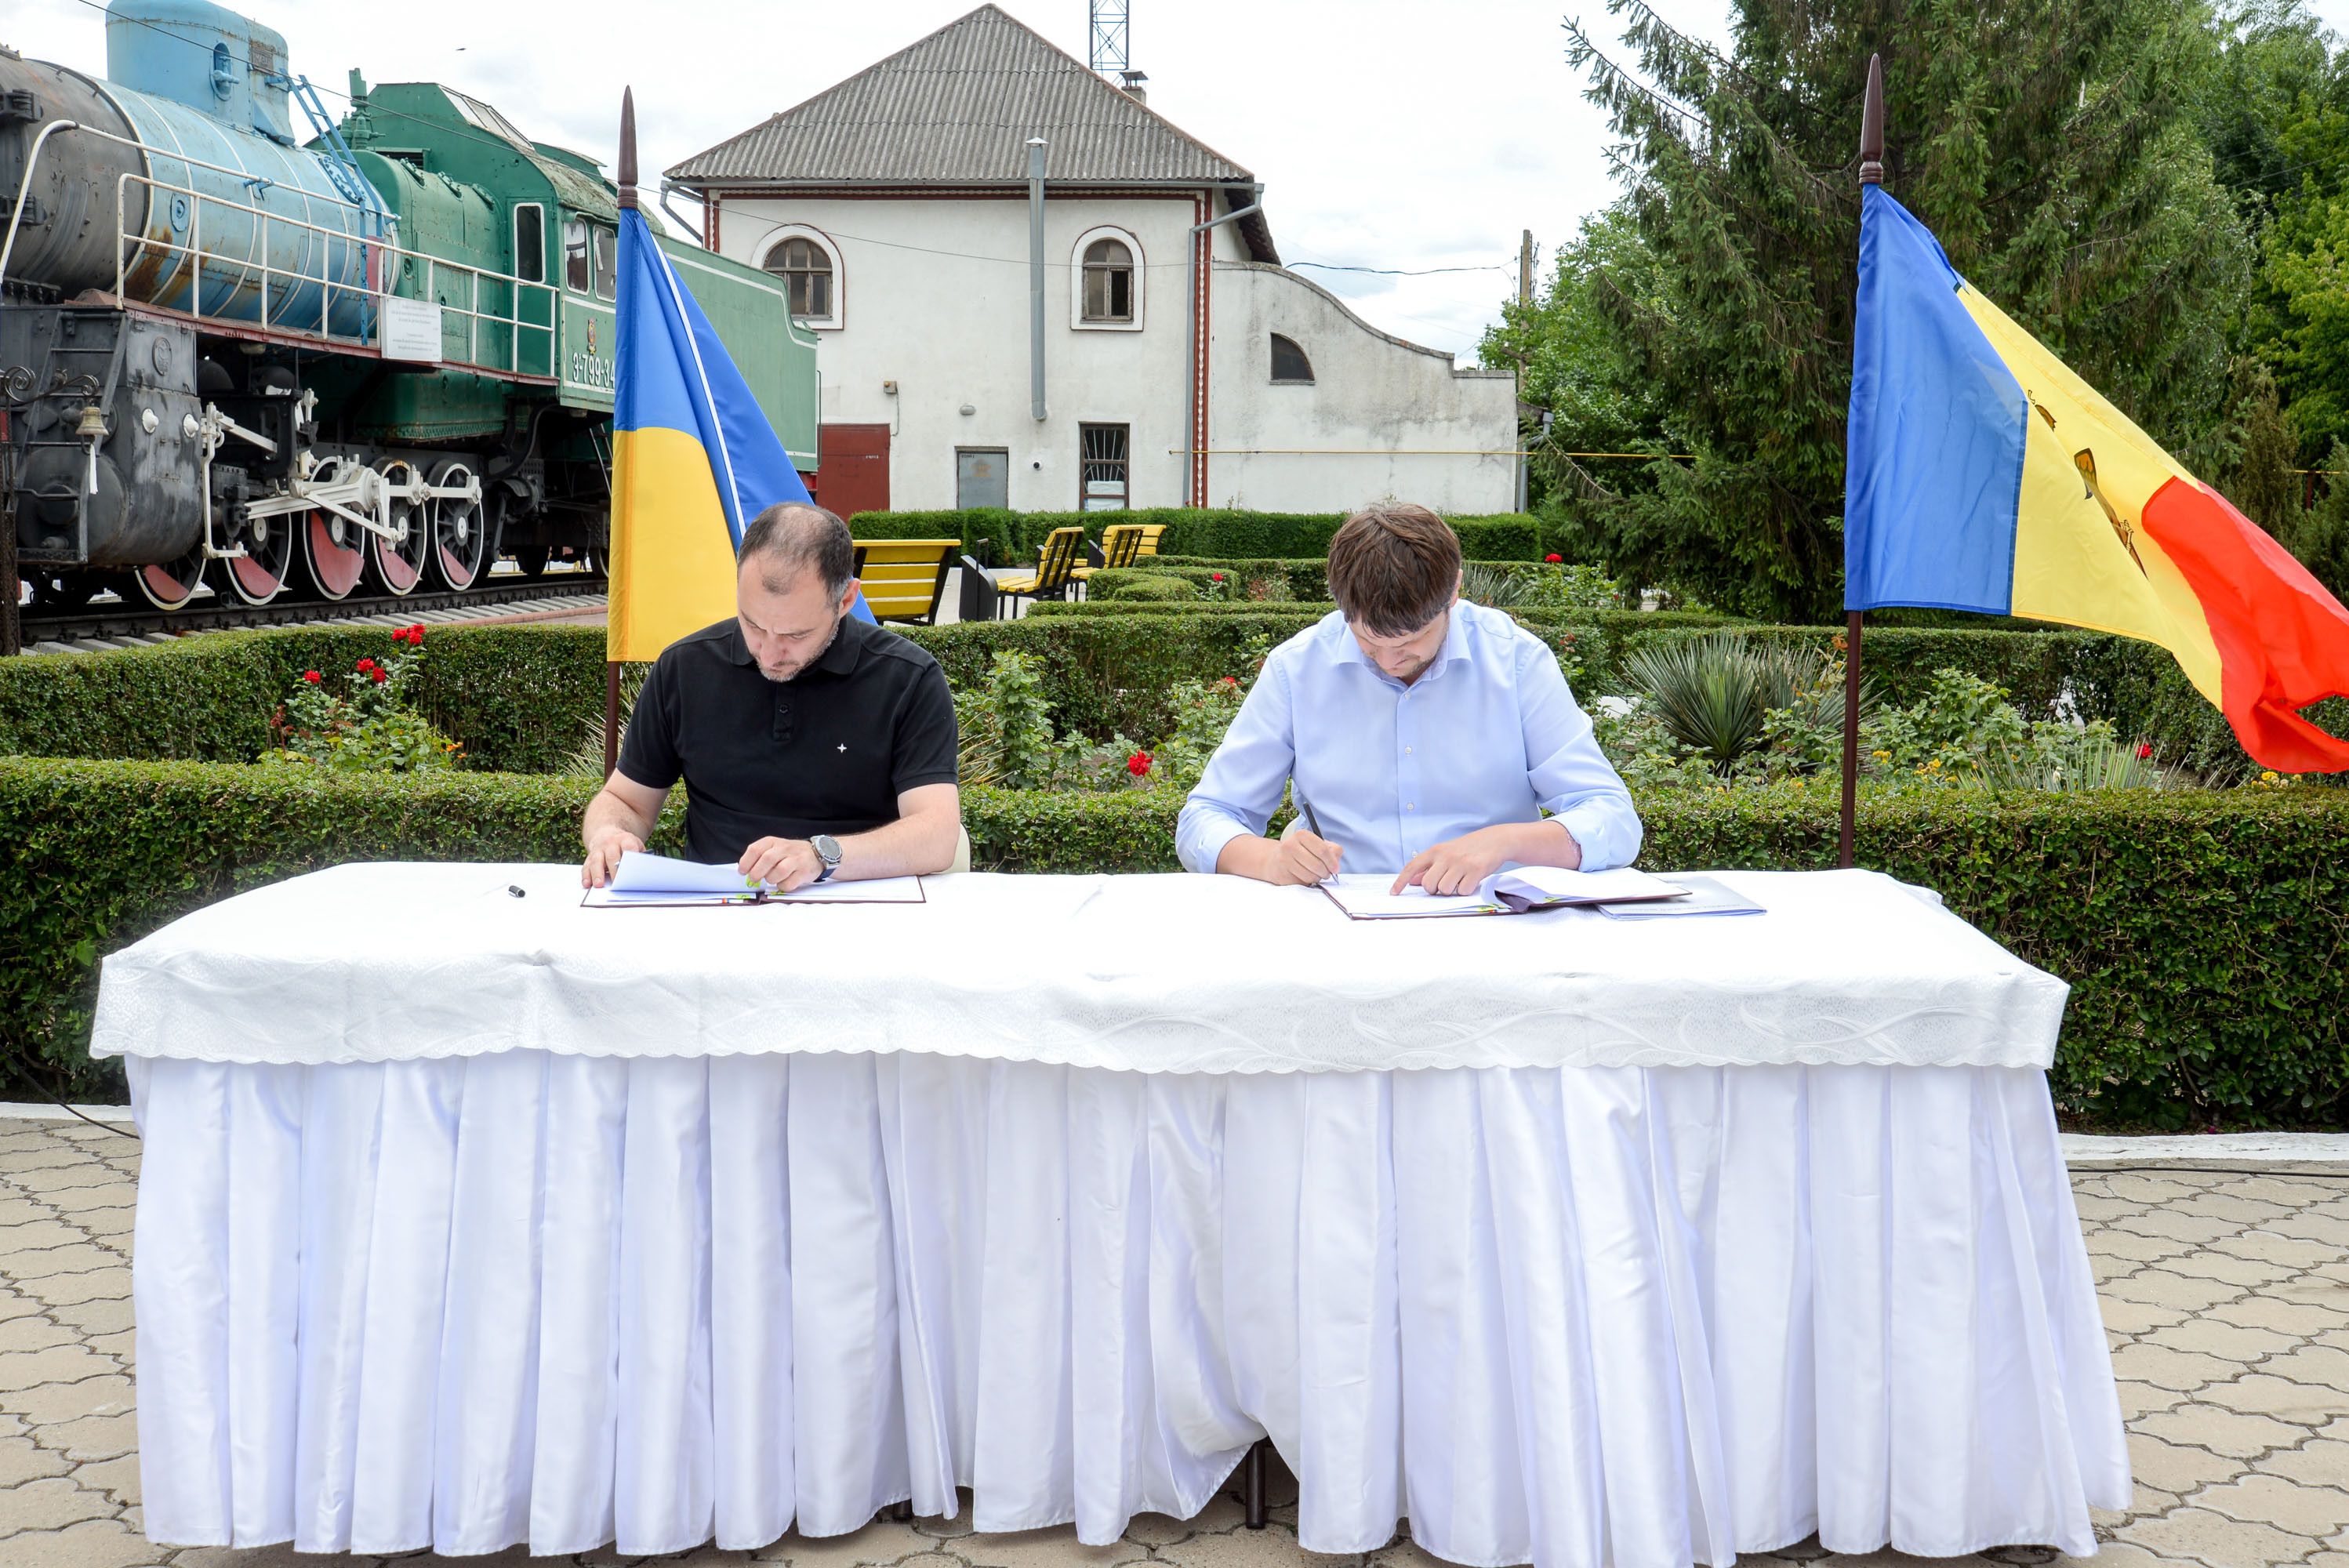 Підписання меморандуму між Республікою Молдова та України щодо розвитку залізничного сполучення